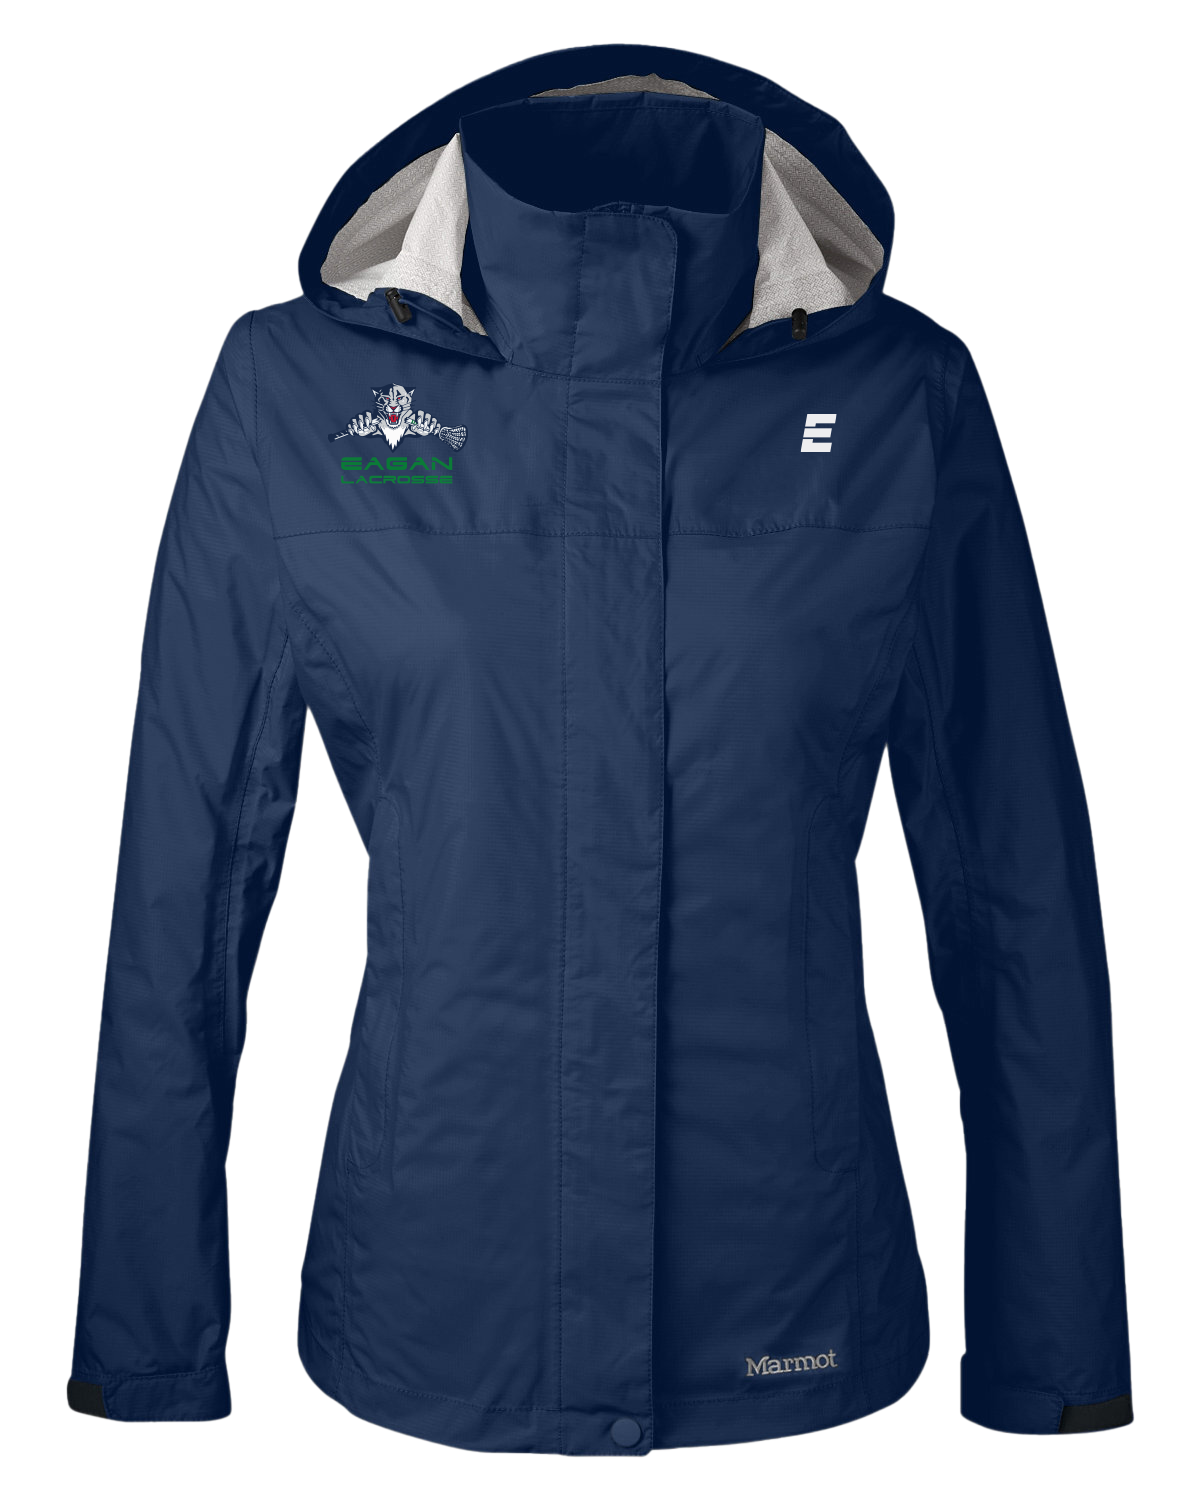 Marmot Women's Rain Jacket Navy